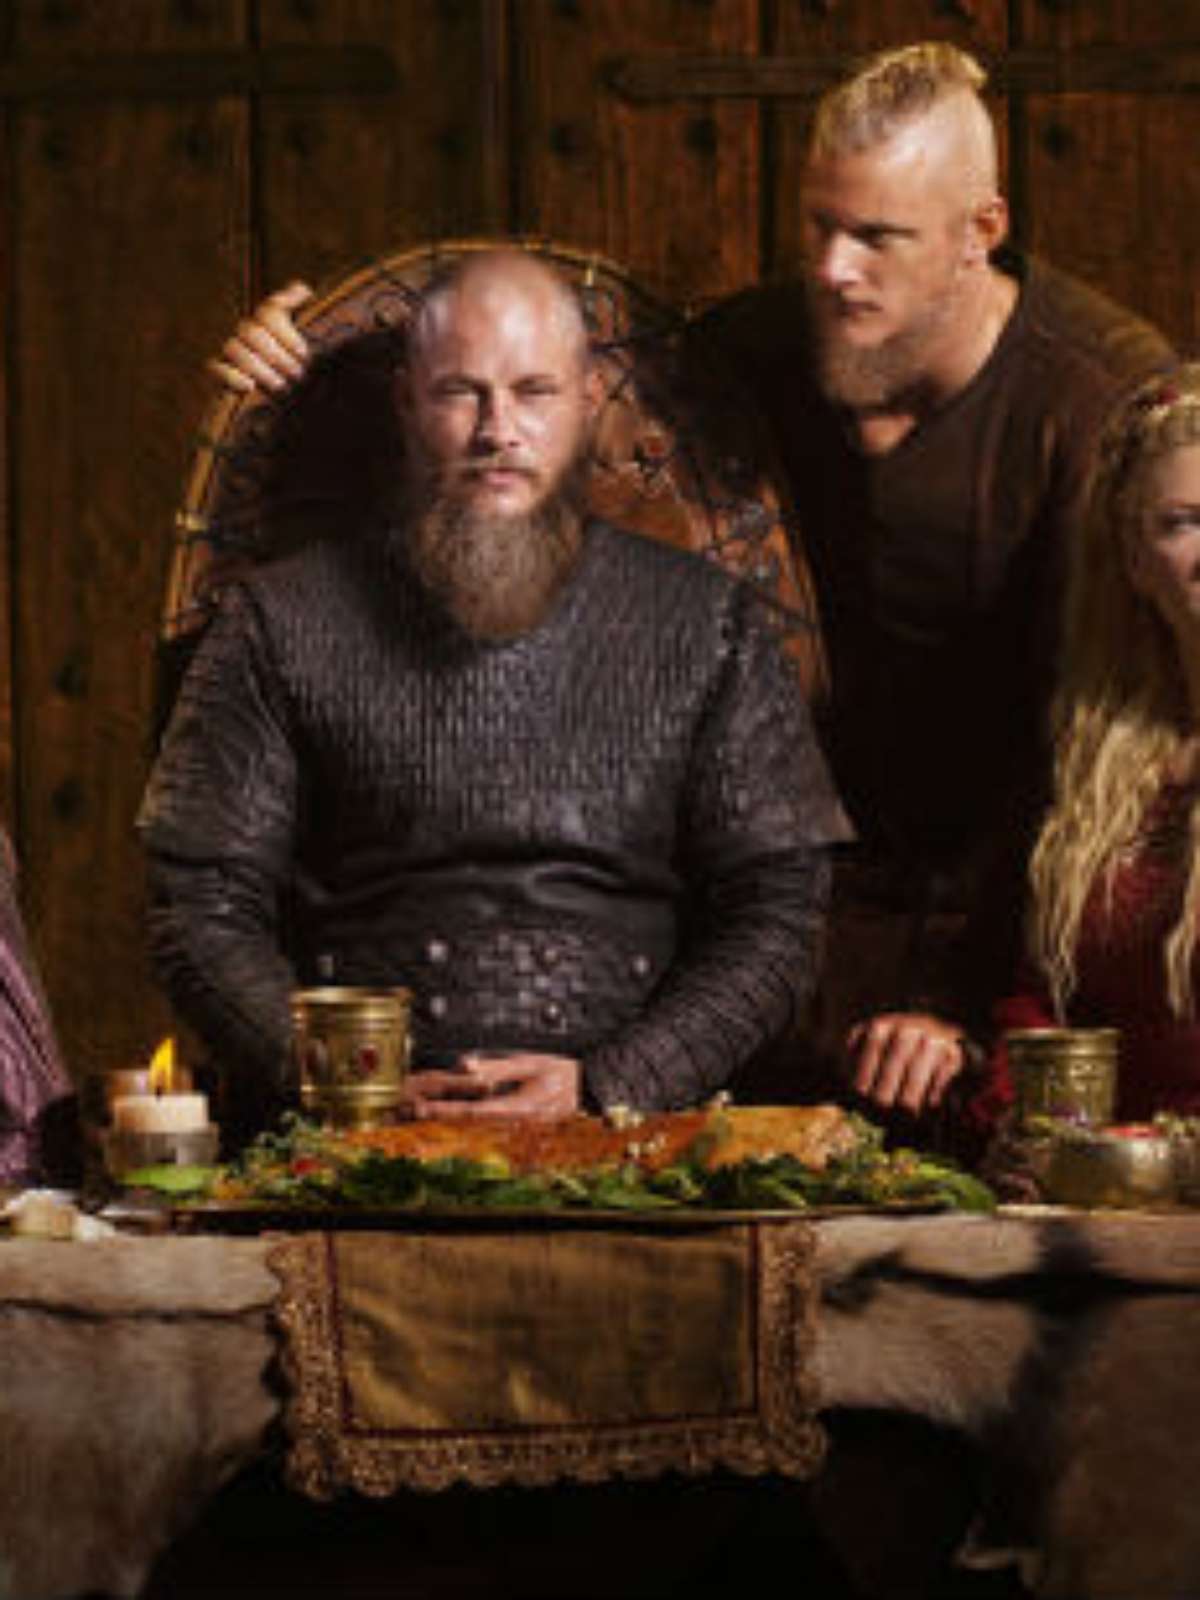 Vikings” – 4ª Temporada: A possível divisão dos filhos de Ragnar Lothbrok!  - Cinema Planet